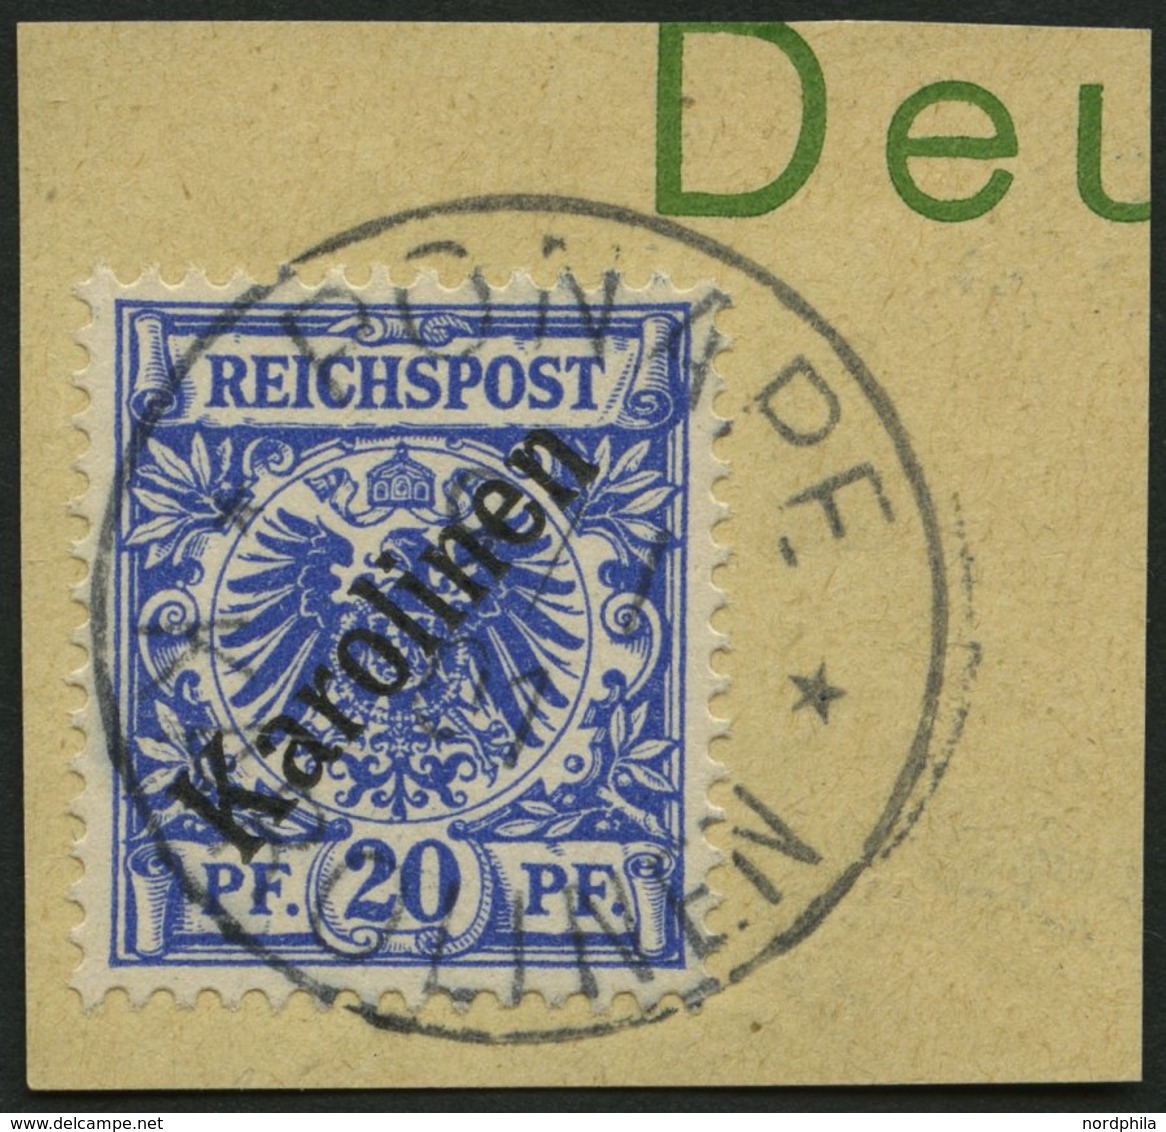 KAROLINEN 4I BrfStk, 1899, 20 Pf. Diagonaler Aufdruck, Prachtbriefstück, Gepr. Jäschke-L., Mi. (160.-) - Karolinen